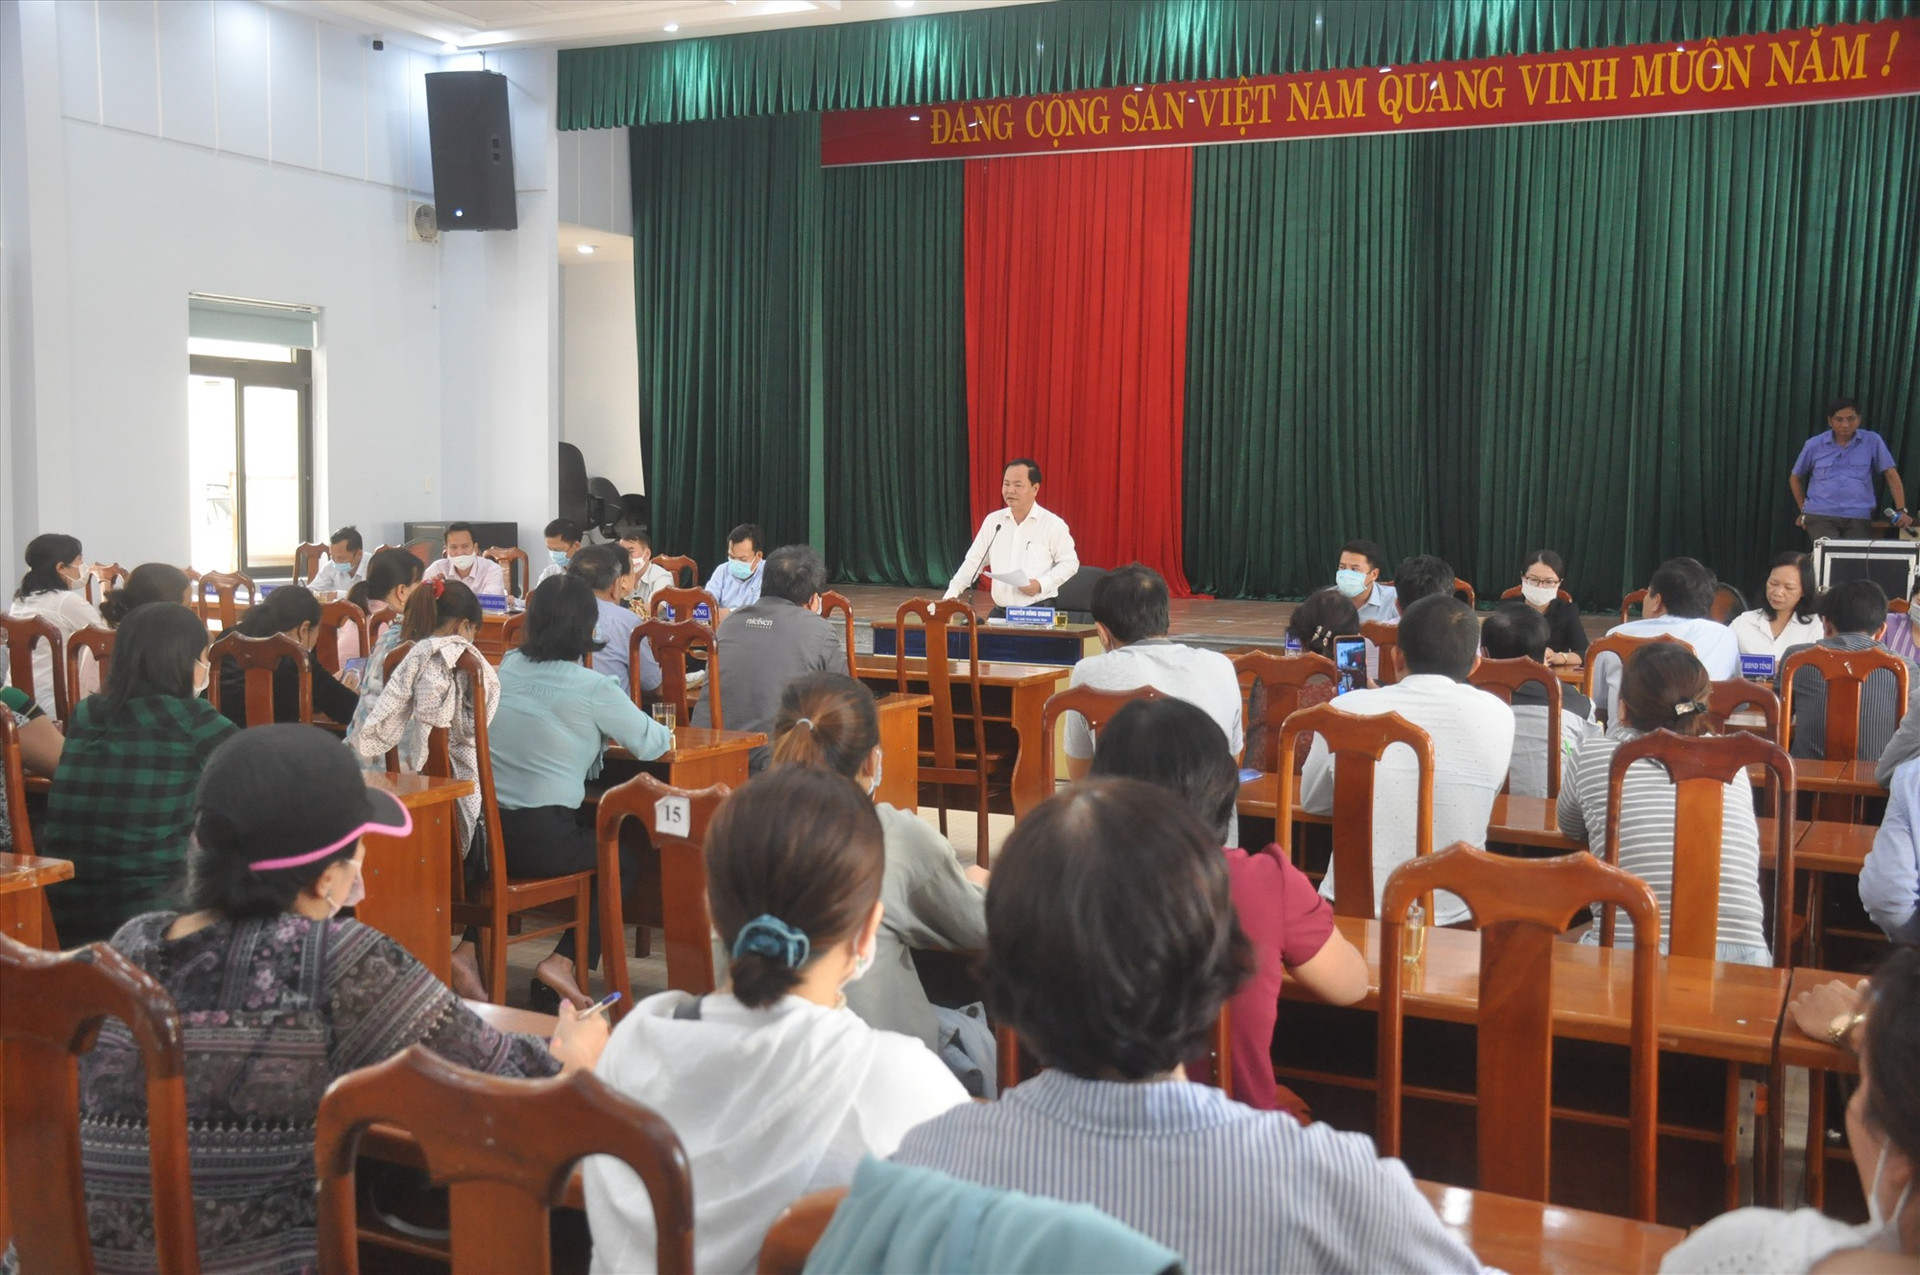 Hàng chục hộ dân mua đất nền dự án Bách Đạt An đăng ký được tiếp, đối thoại tại buổi tiếp dân định kỳ tháng 3.2021 của lãnh đạo UBND tỉnh sáng 26.3. Ảnh: N.Đ